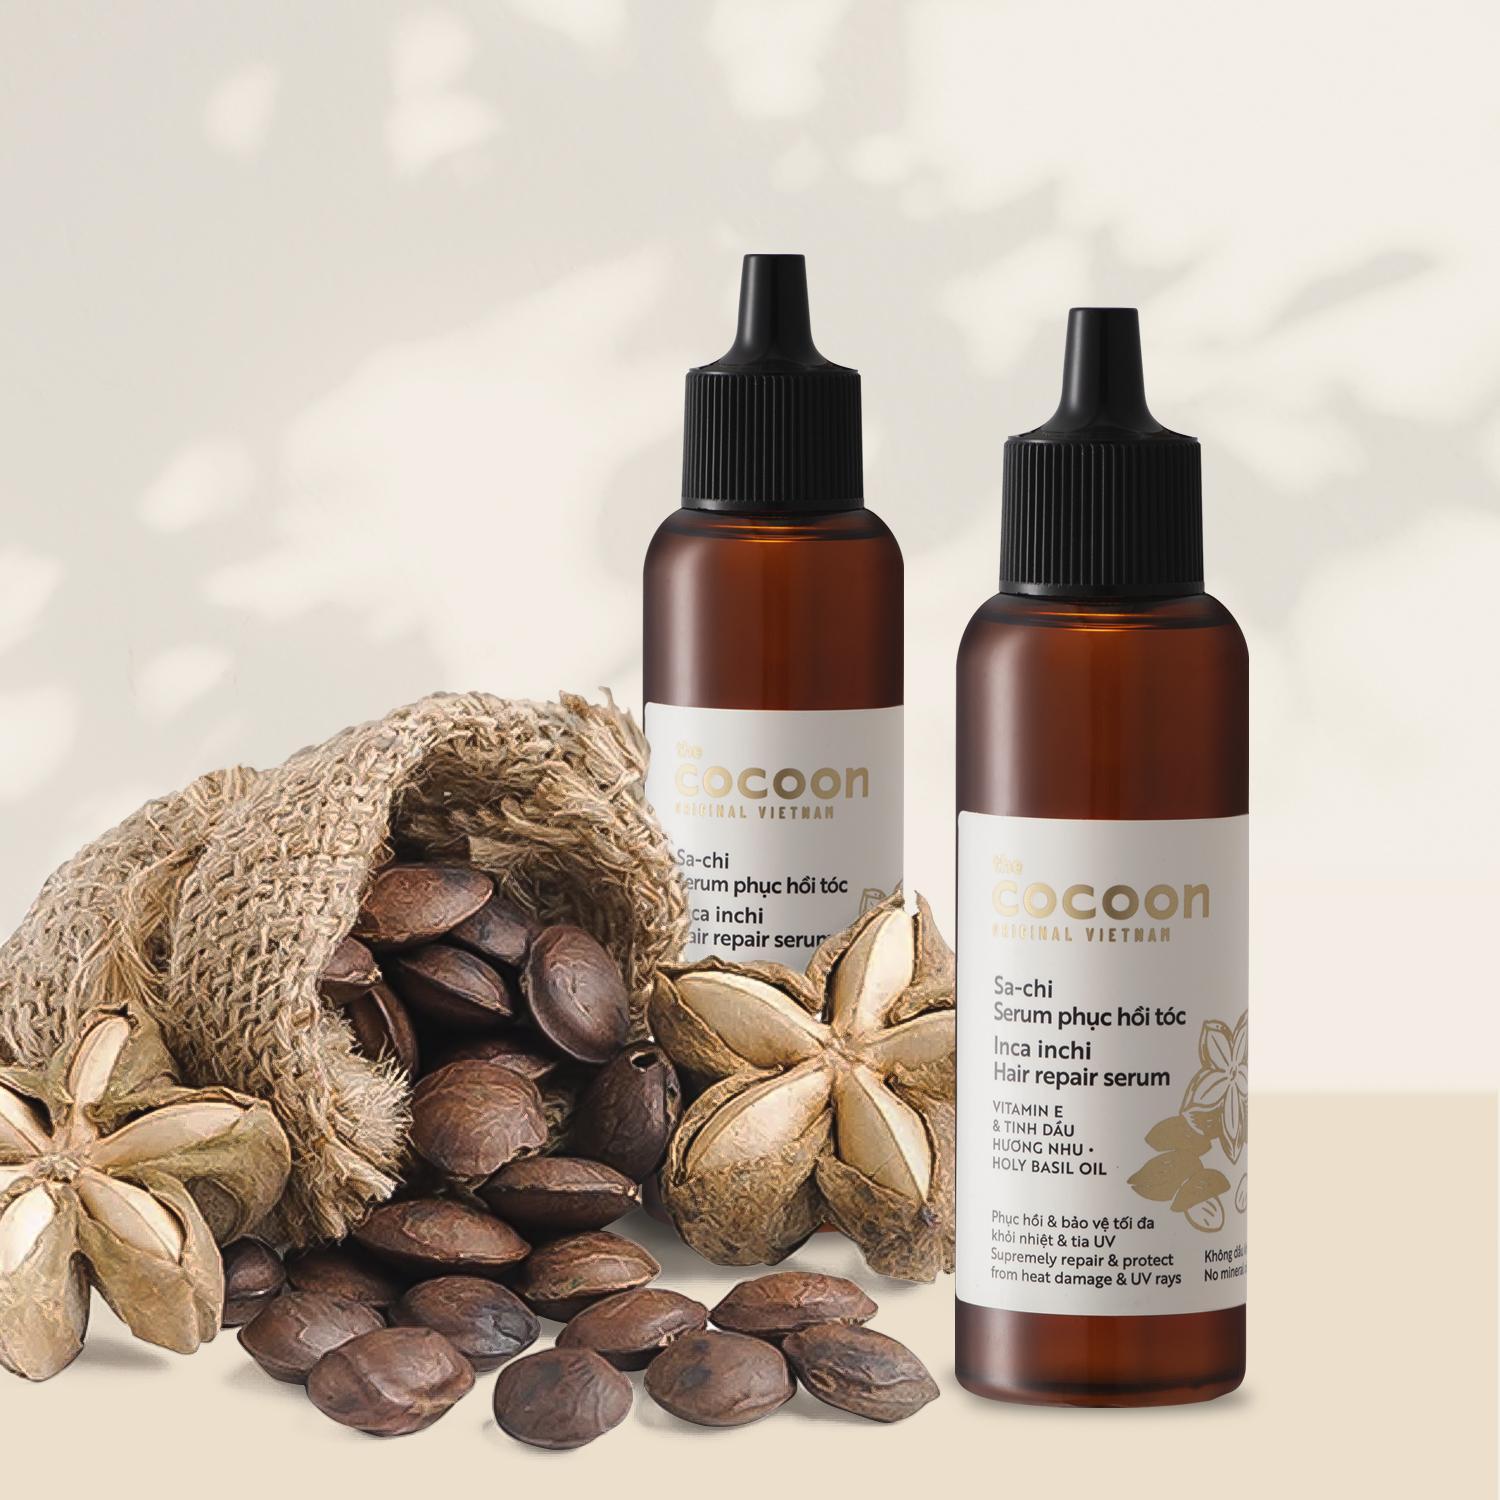 Combo Nước dưỡng tóc Sa-chi Cocoon 140ml + Serum Sa-chi phục hồi tóc Cocoon 70ml